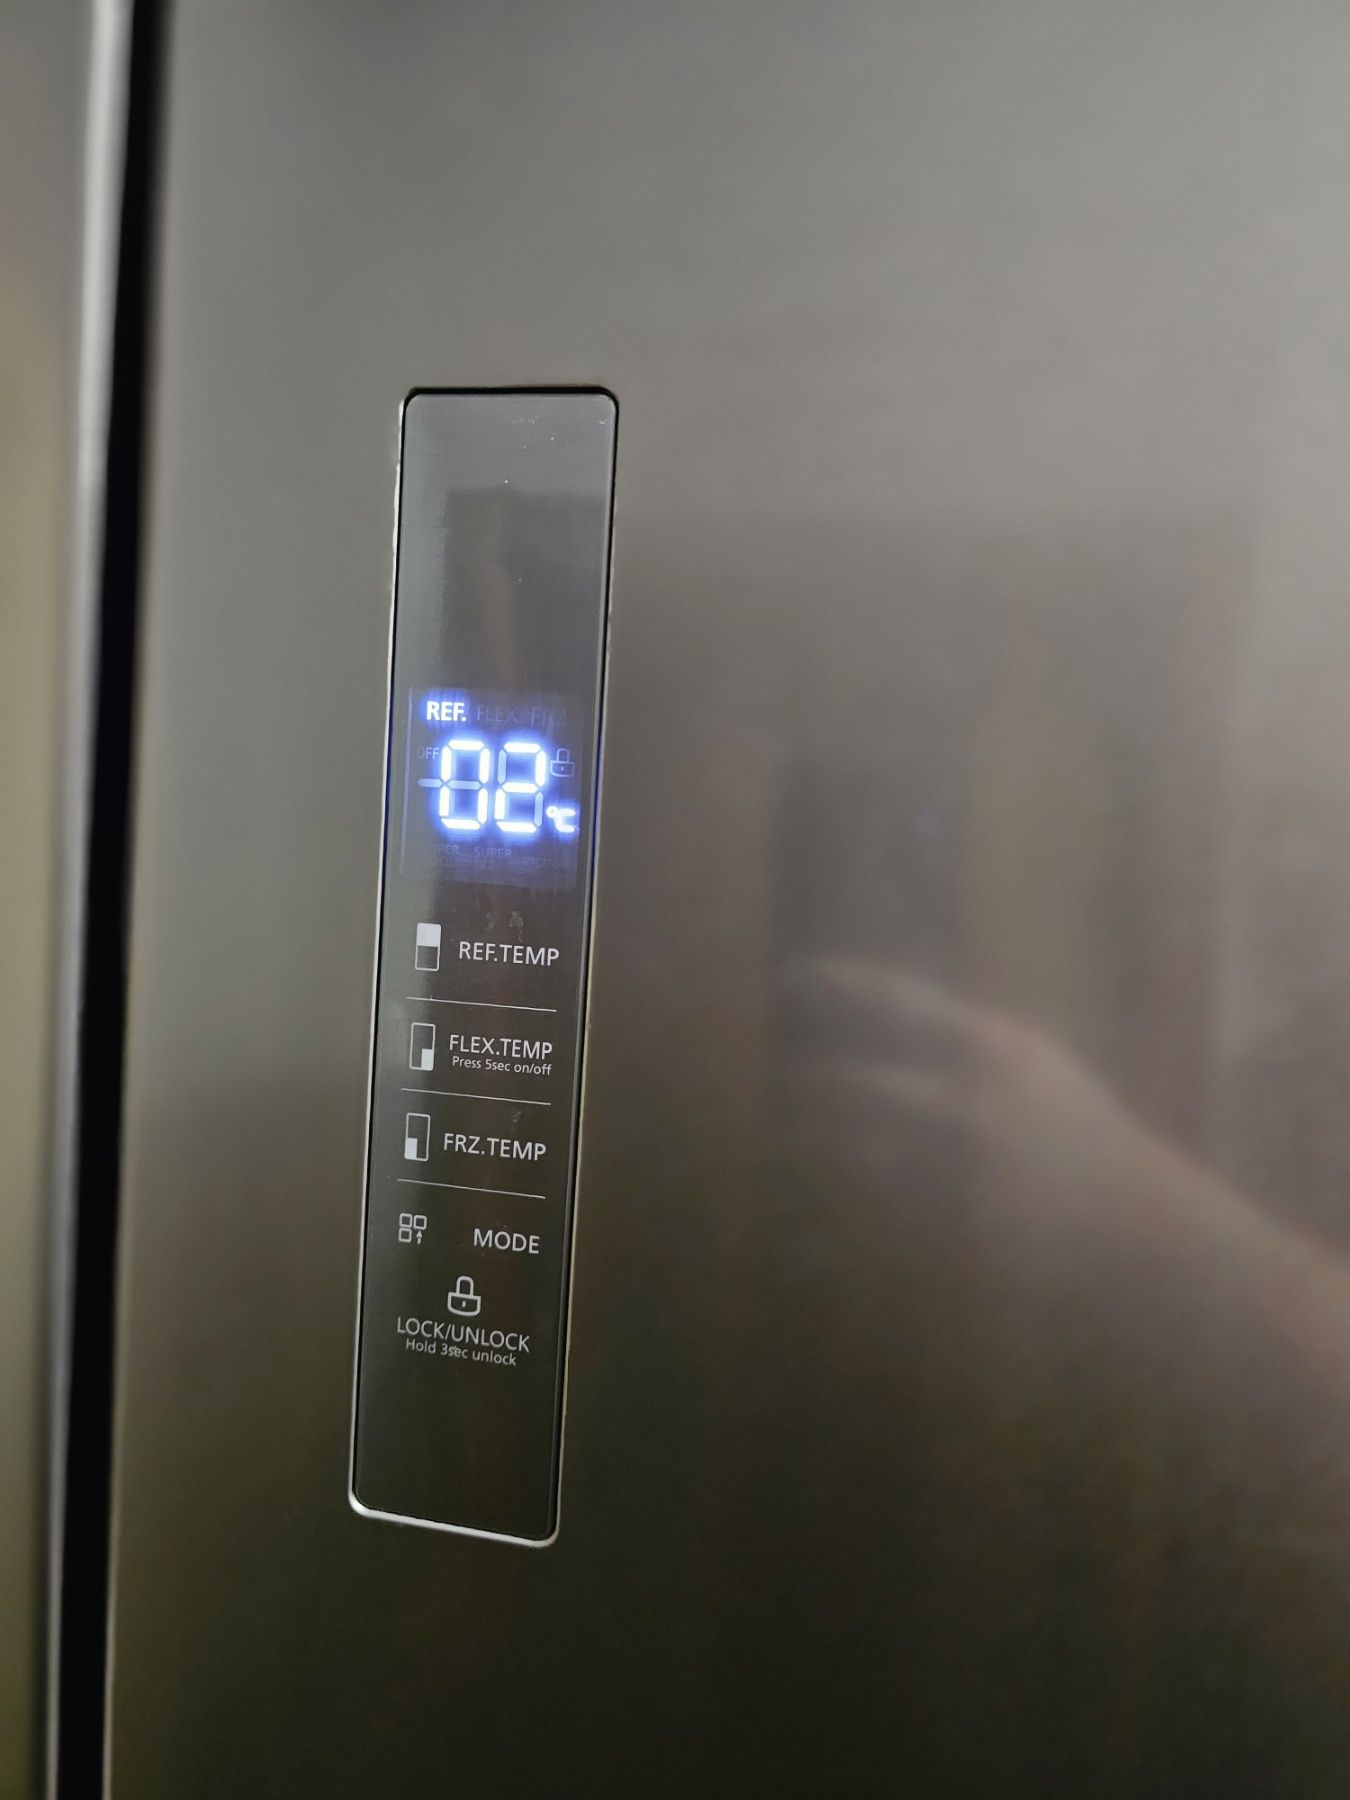 Многодверный холодильник Concept LA8983ss Quattro Сірий